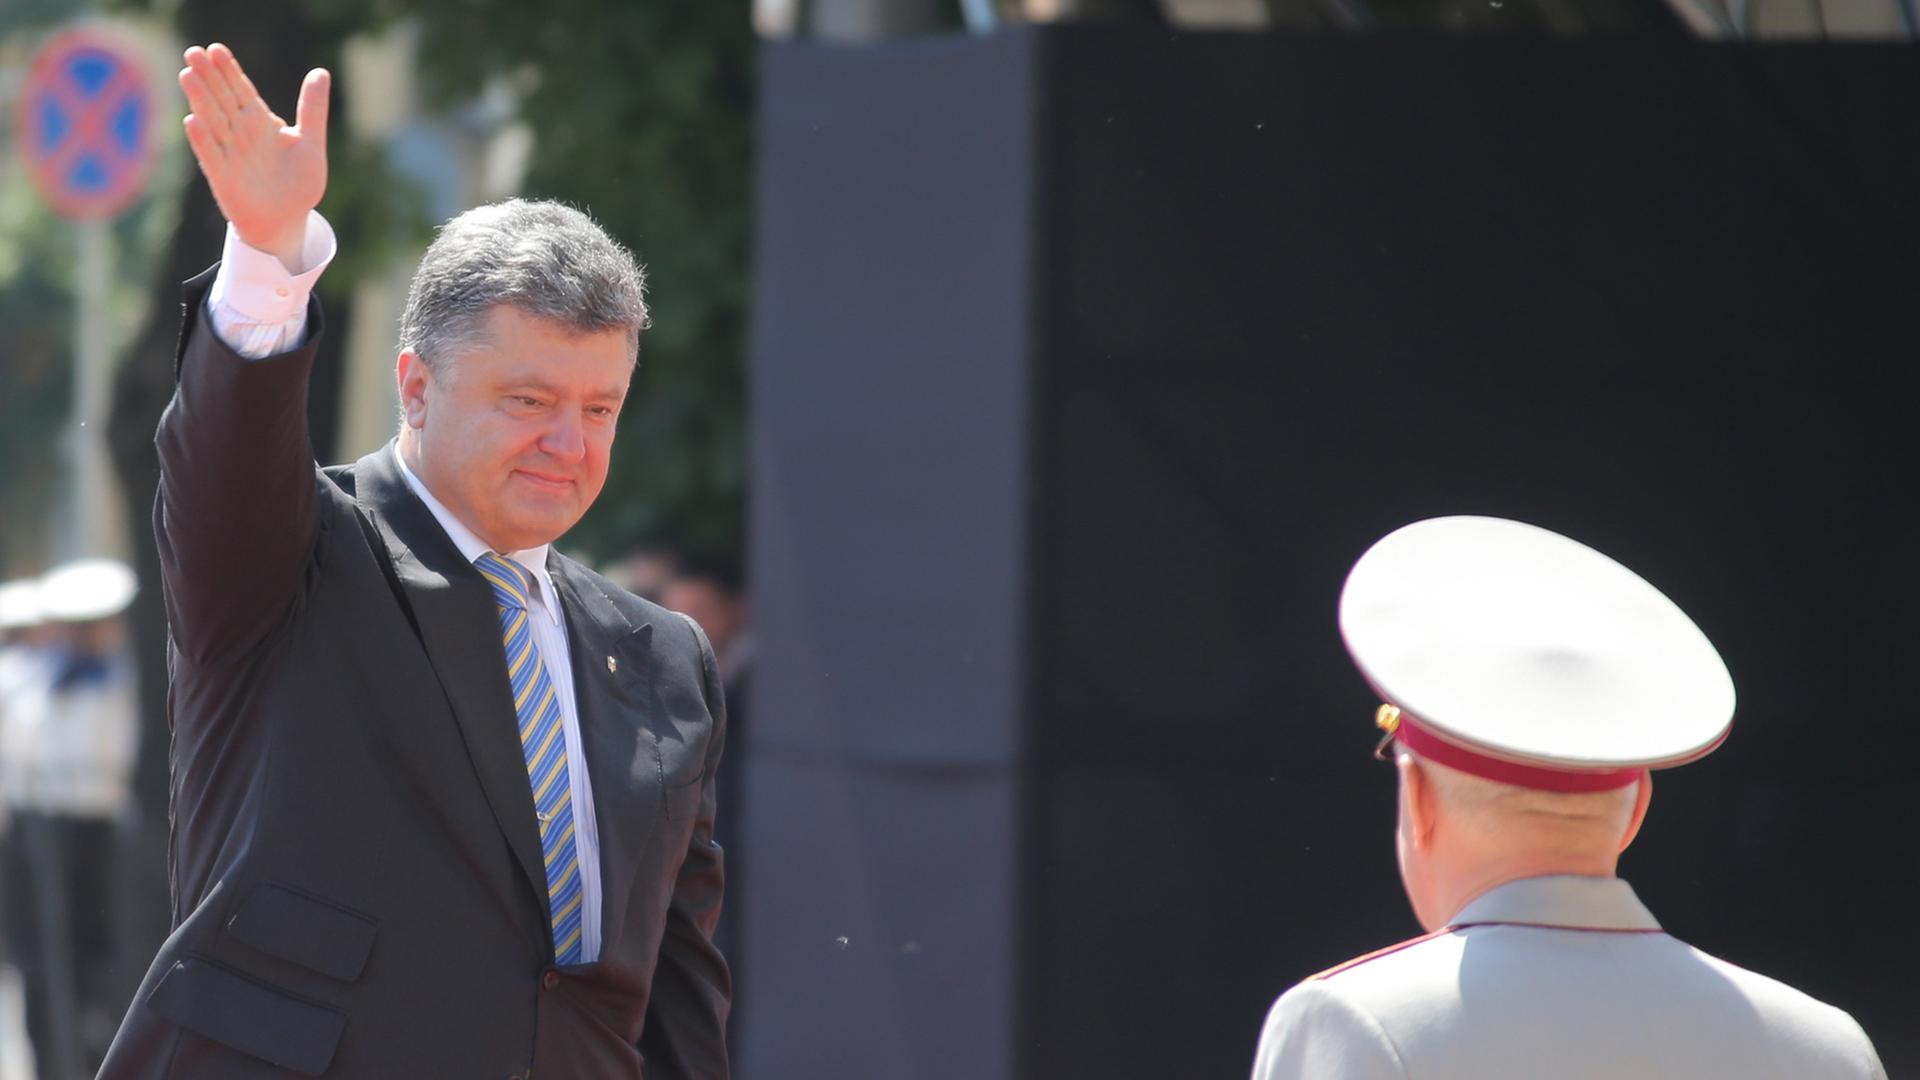 Der neue ukrainische Präsident Petro Poroschenko winkt in Richtung Kamera.